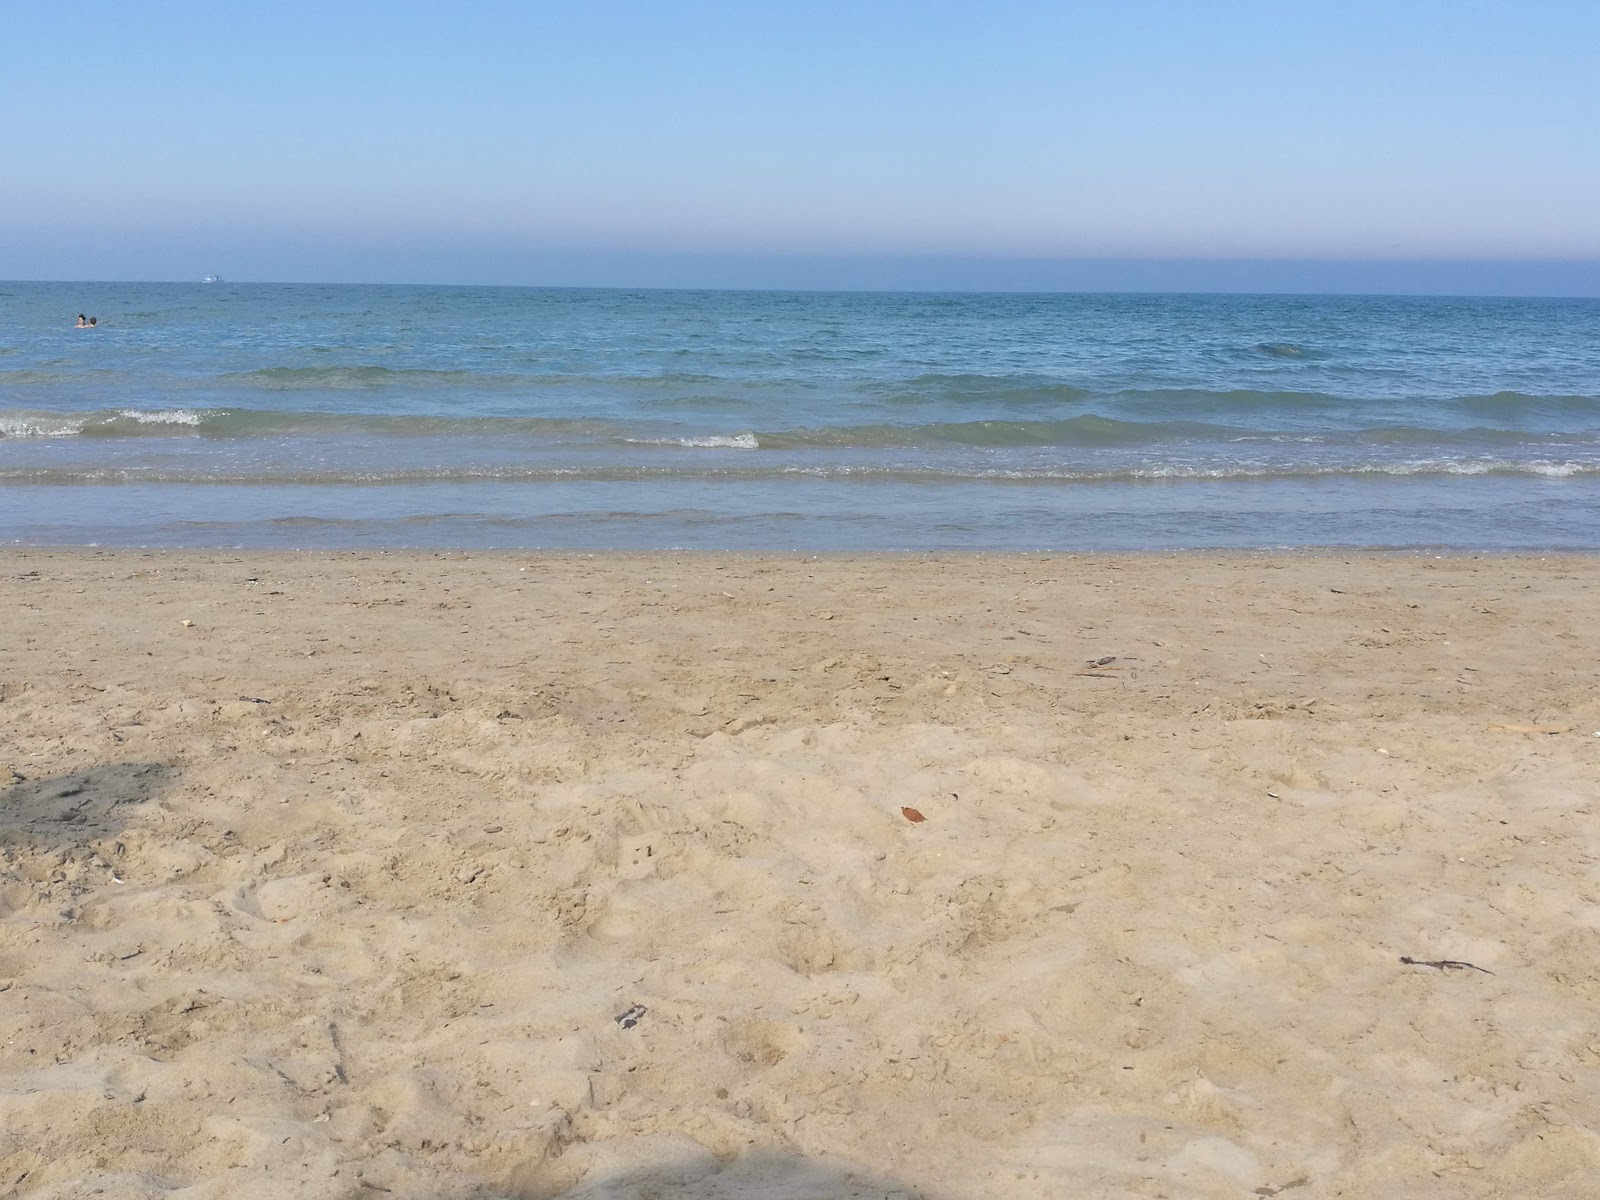 Fotografie cu Giulianova beach - locul popular printre cunoscătorii de relaxare